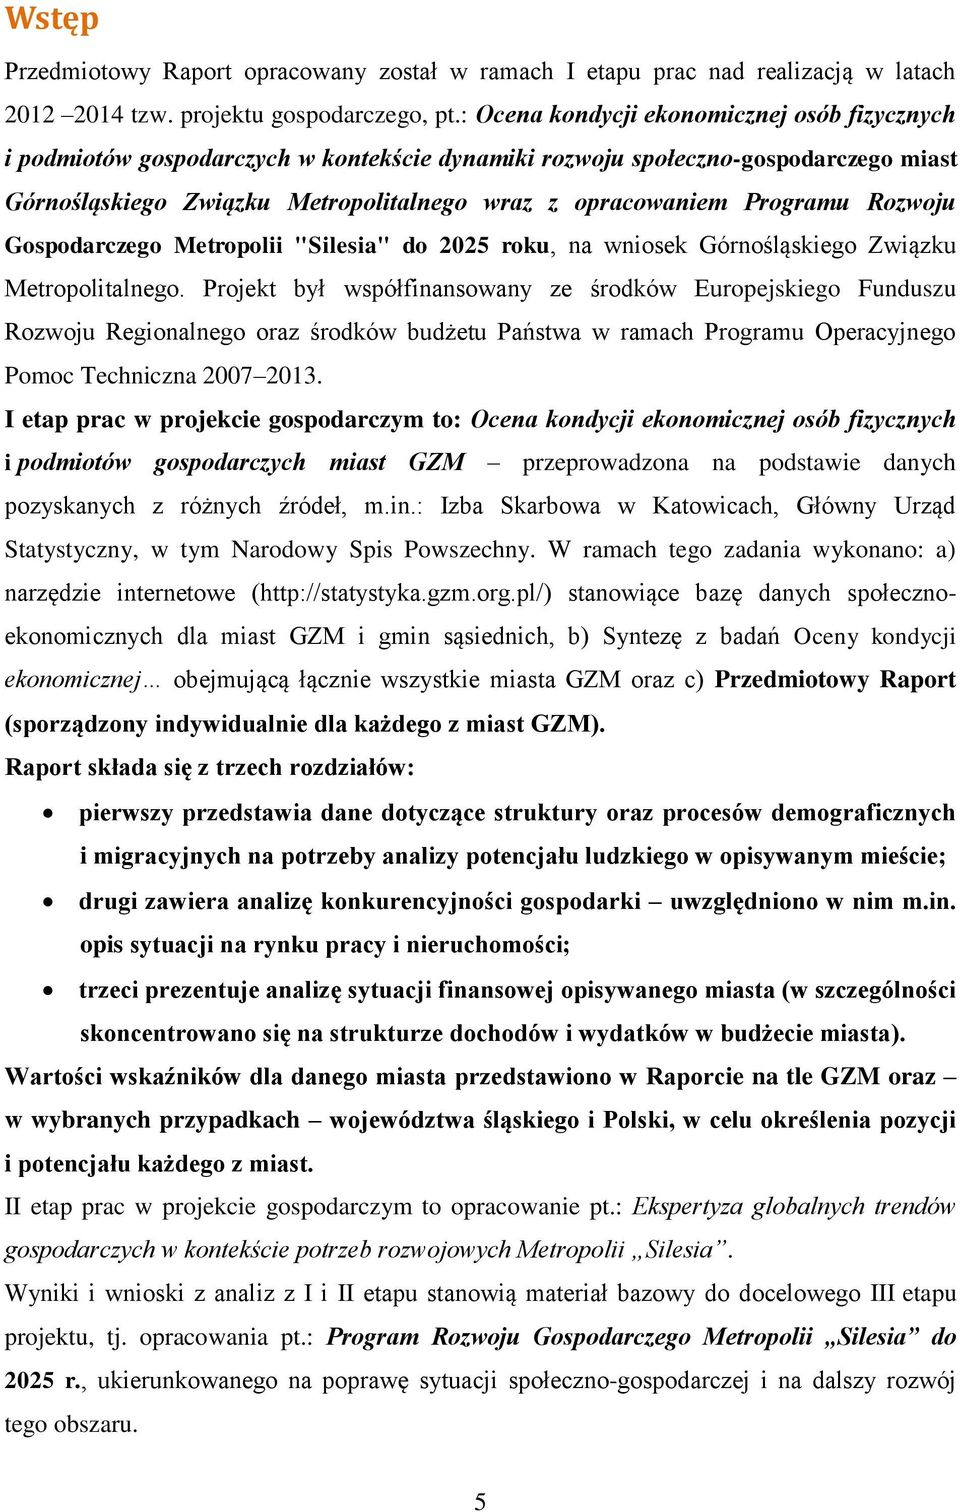 Programu Rozwoju Gospodarczego Metropolii "Silesia" do 2025 roku, na wniosek Górnośląskiego Związku Metropolitalnego.